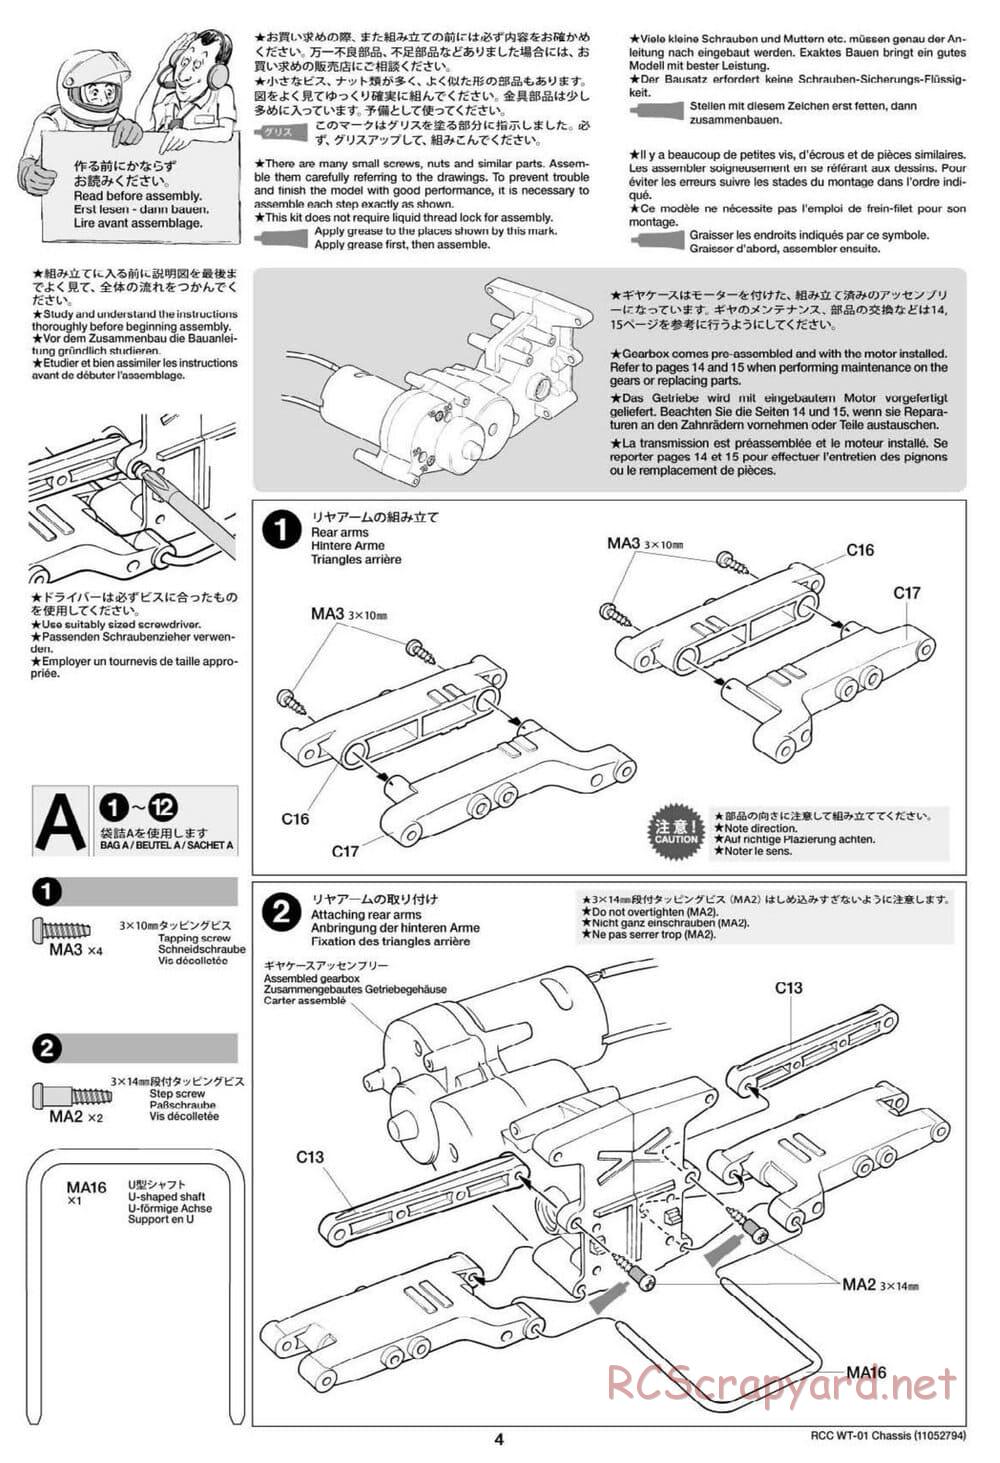 Tamiya - WT-01 Chassis - Manual - Page 4